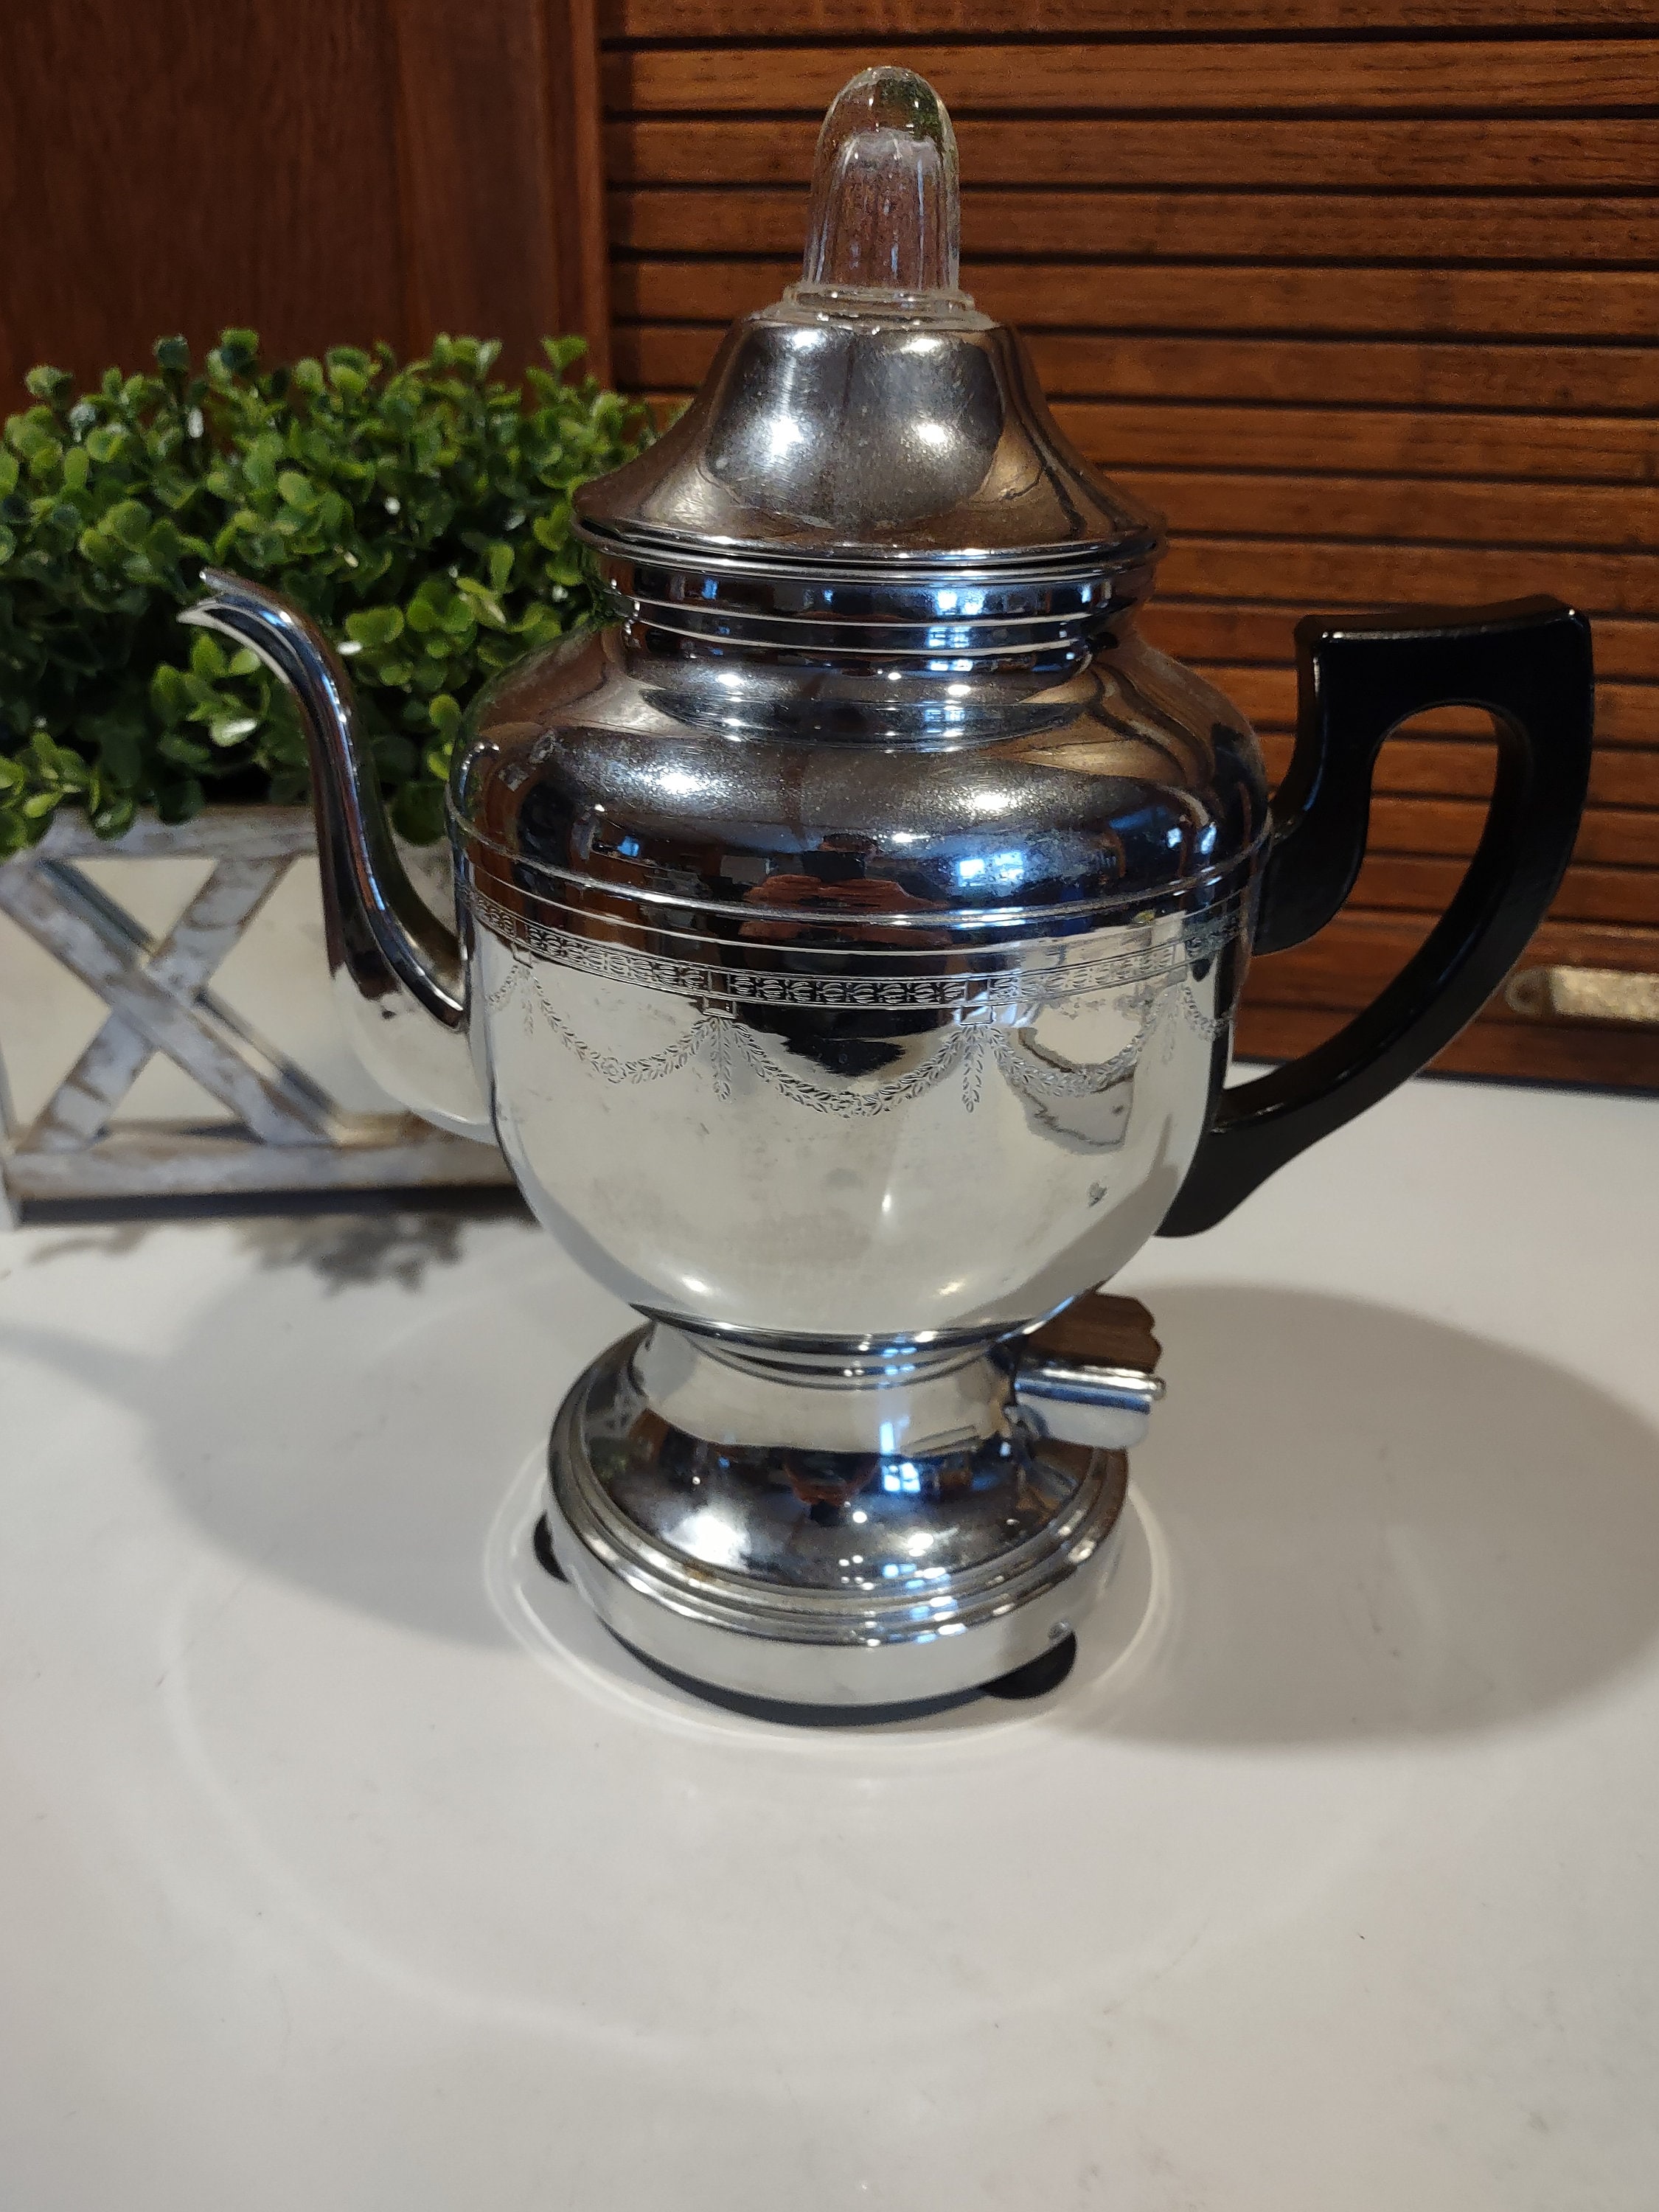 Vintage 1940s Art Deco Farberware Coffee Pot Percolator - no electric cord